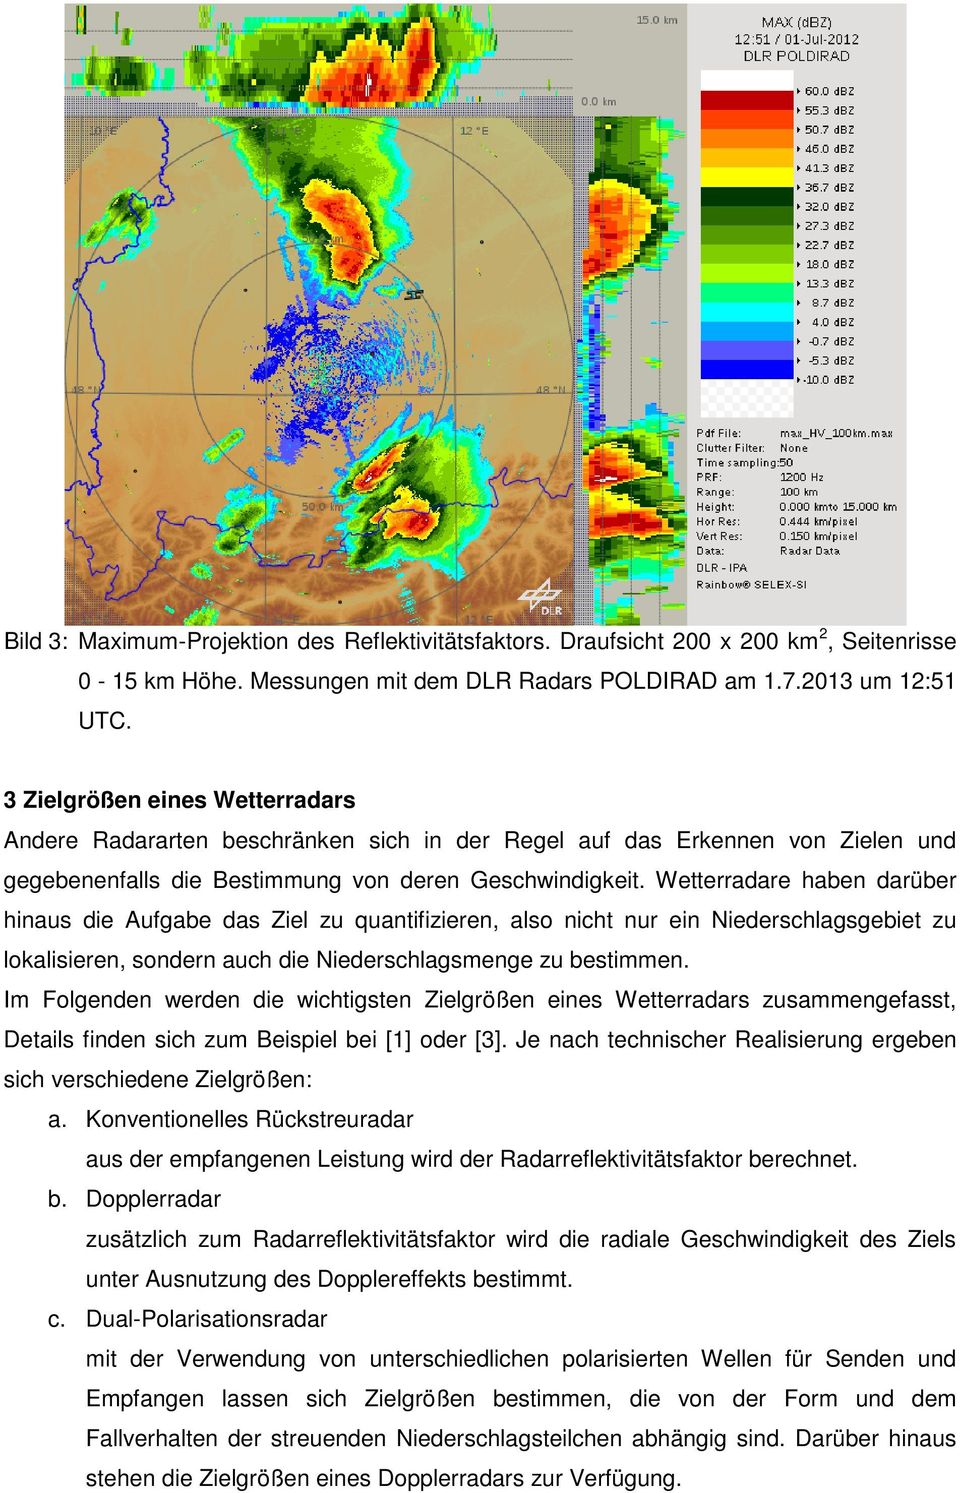 Wetterradare haben darüber hinaus die Aufgabe das Ziel zu quantifizieren, also nicht nur ein Niederschlagsgebiet zu lokalisieren, sondern auch die Niederschlagsmenge zu bestimmen.